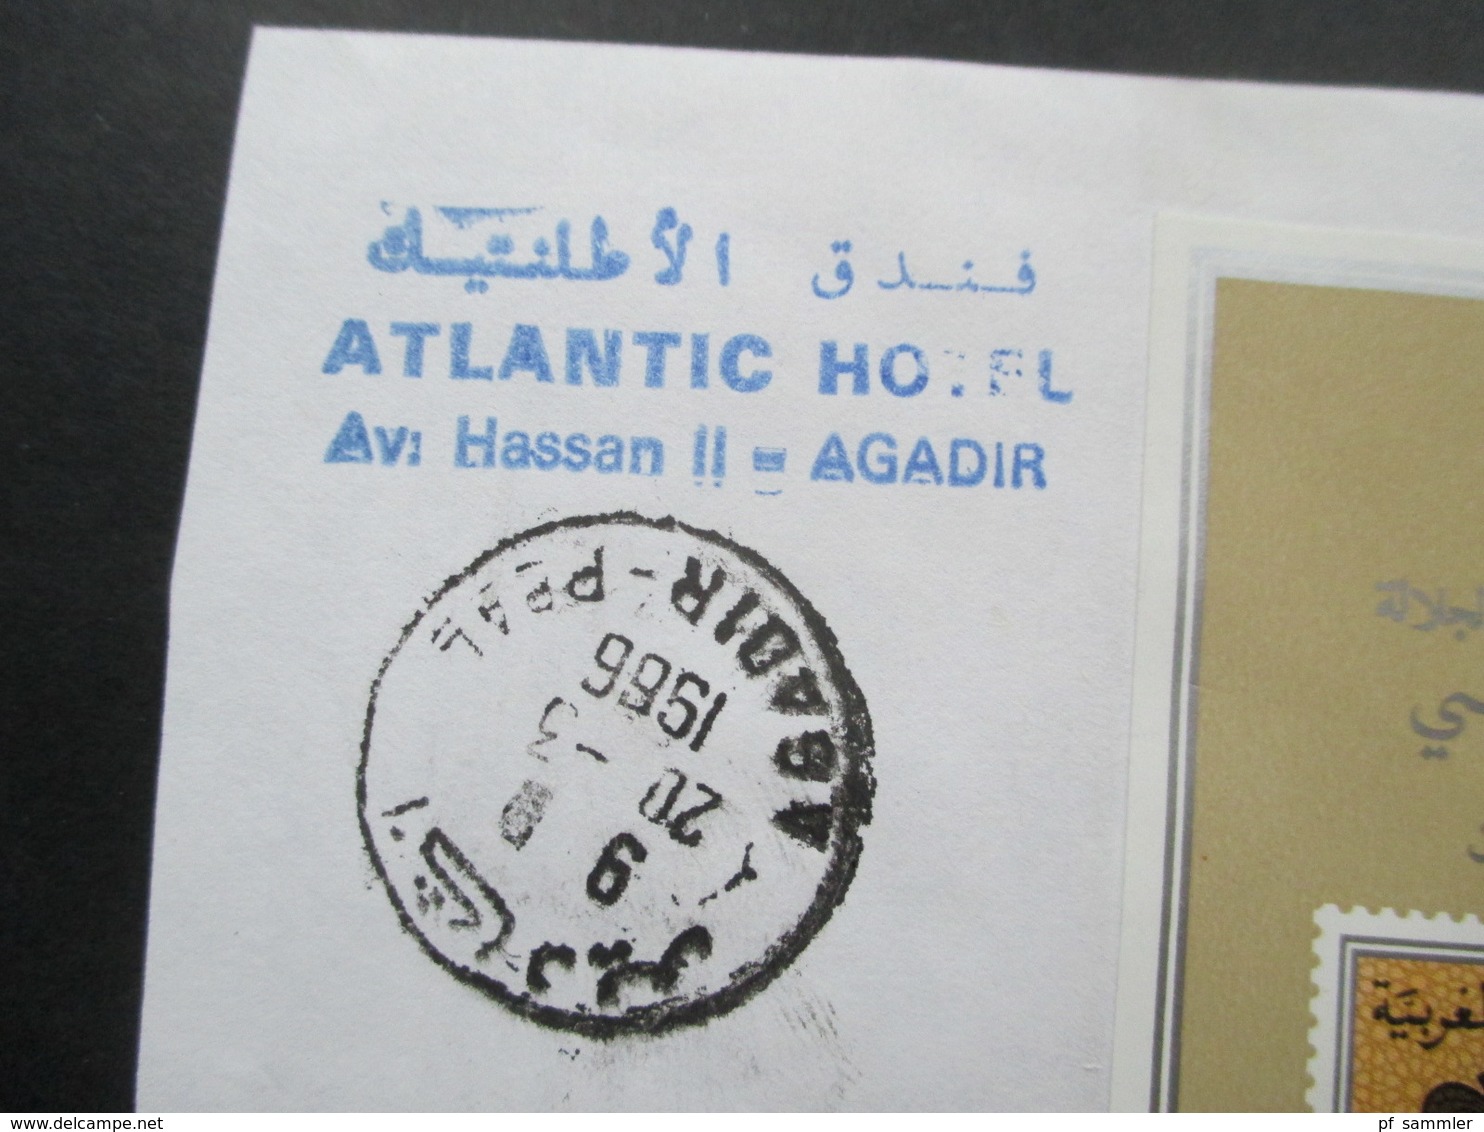 Marokko Luftpostbrief Jubiläumsblock 25. Kronjubiläum König Hassan II. Atlantic Hotel Av. Hassan II Agadir. RRR - Maroc (1956-...)